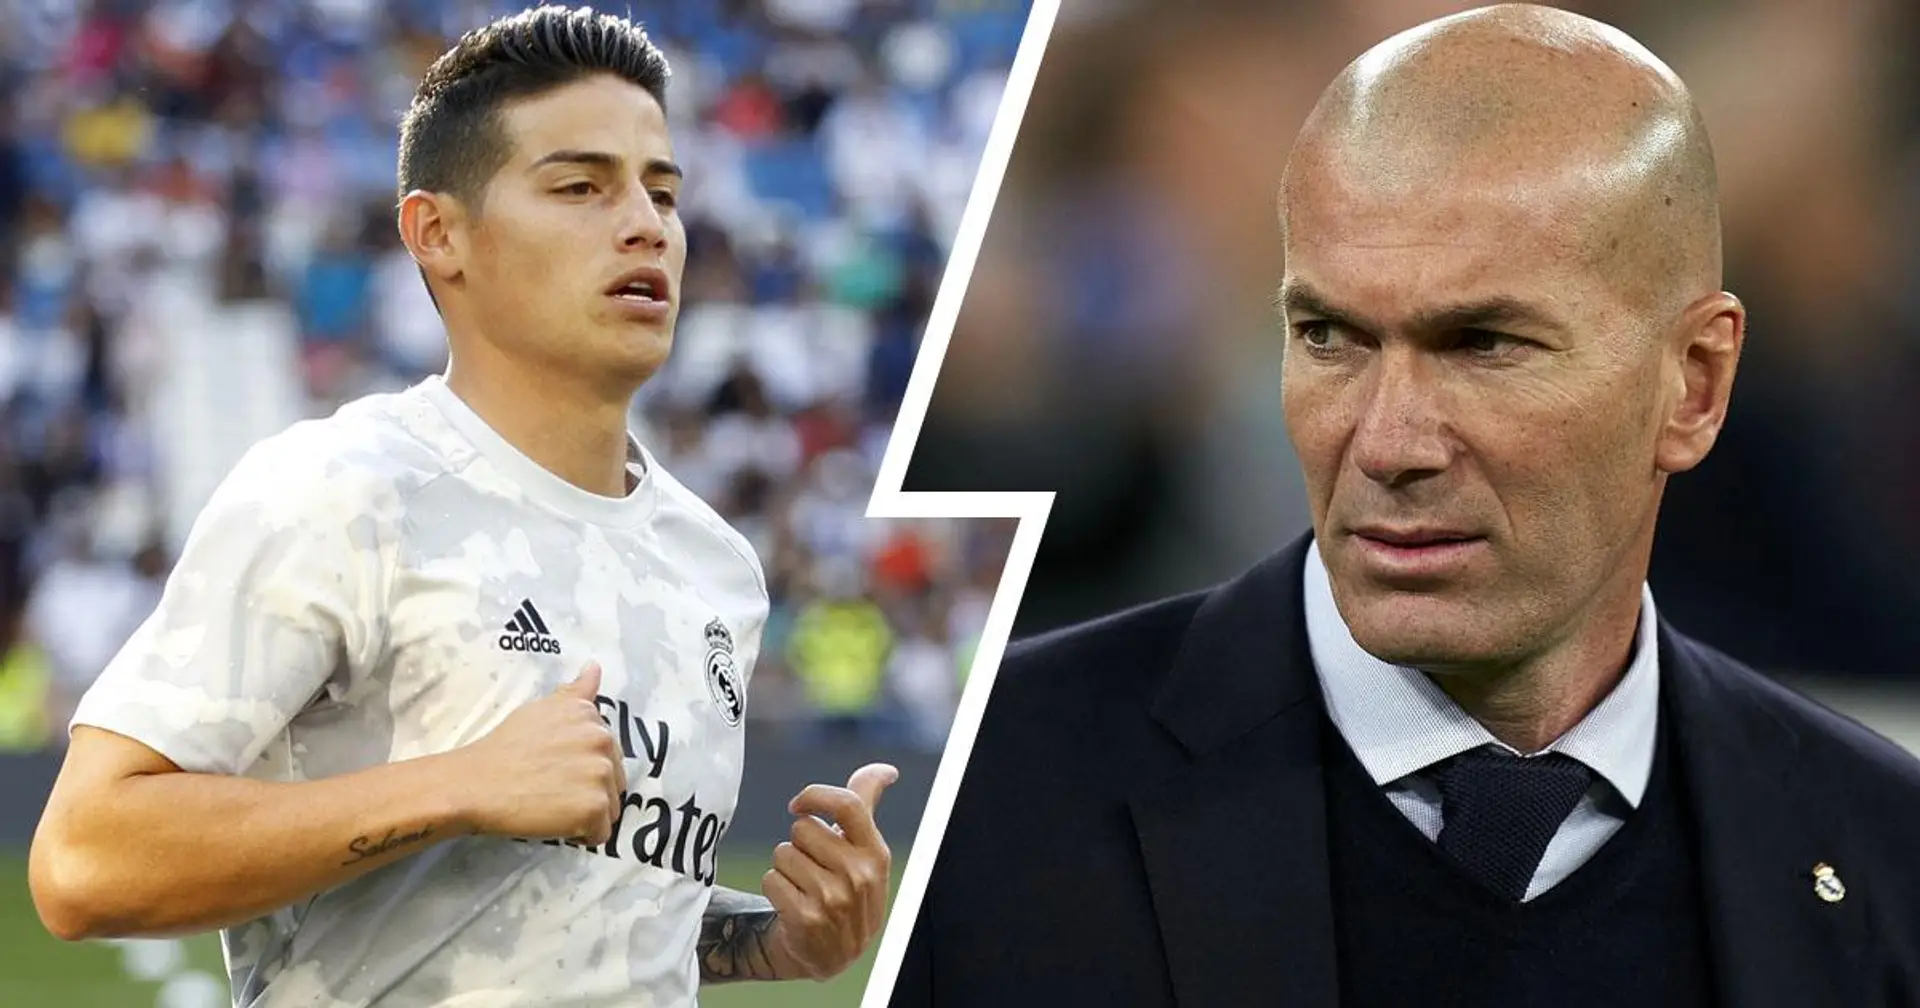 Le Real Madrid s'apprête à se séparer de 3 joueurs dans les prochains jours